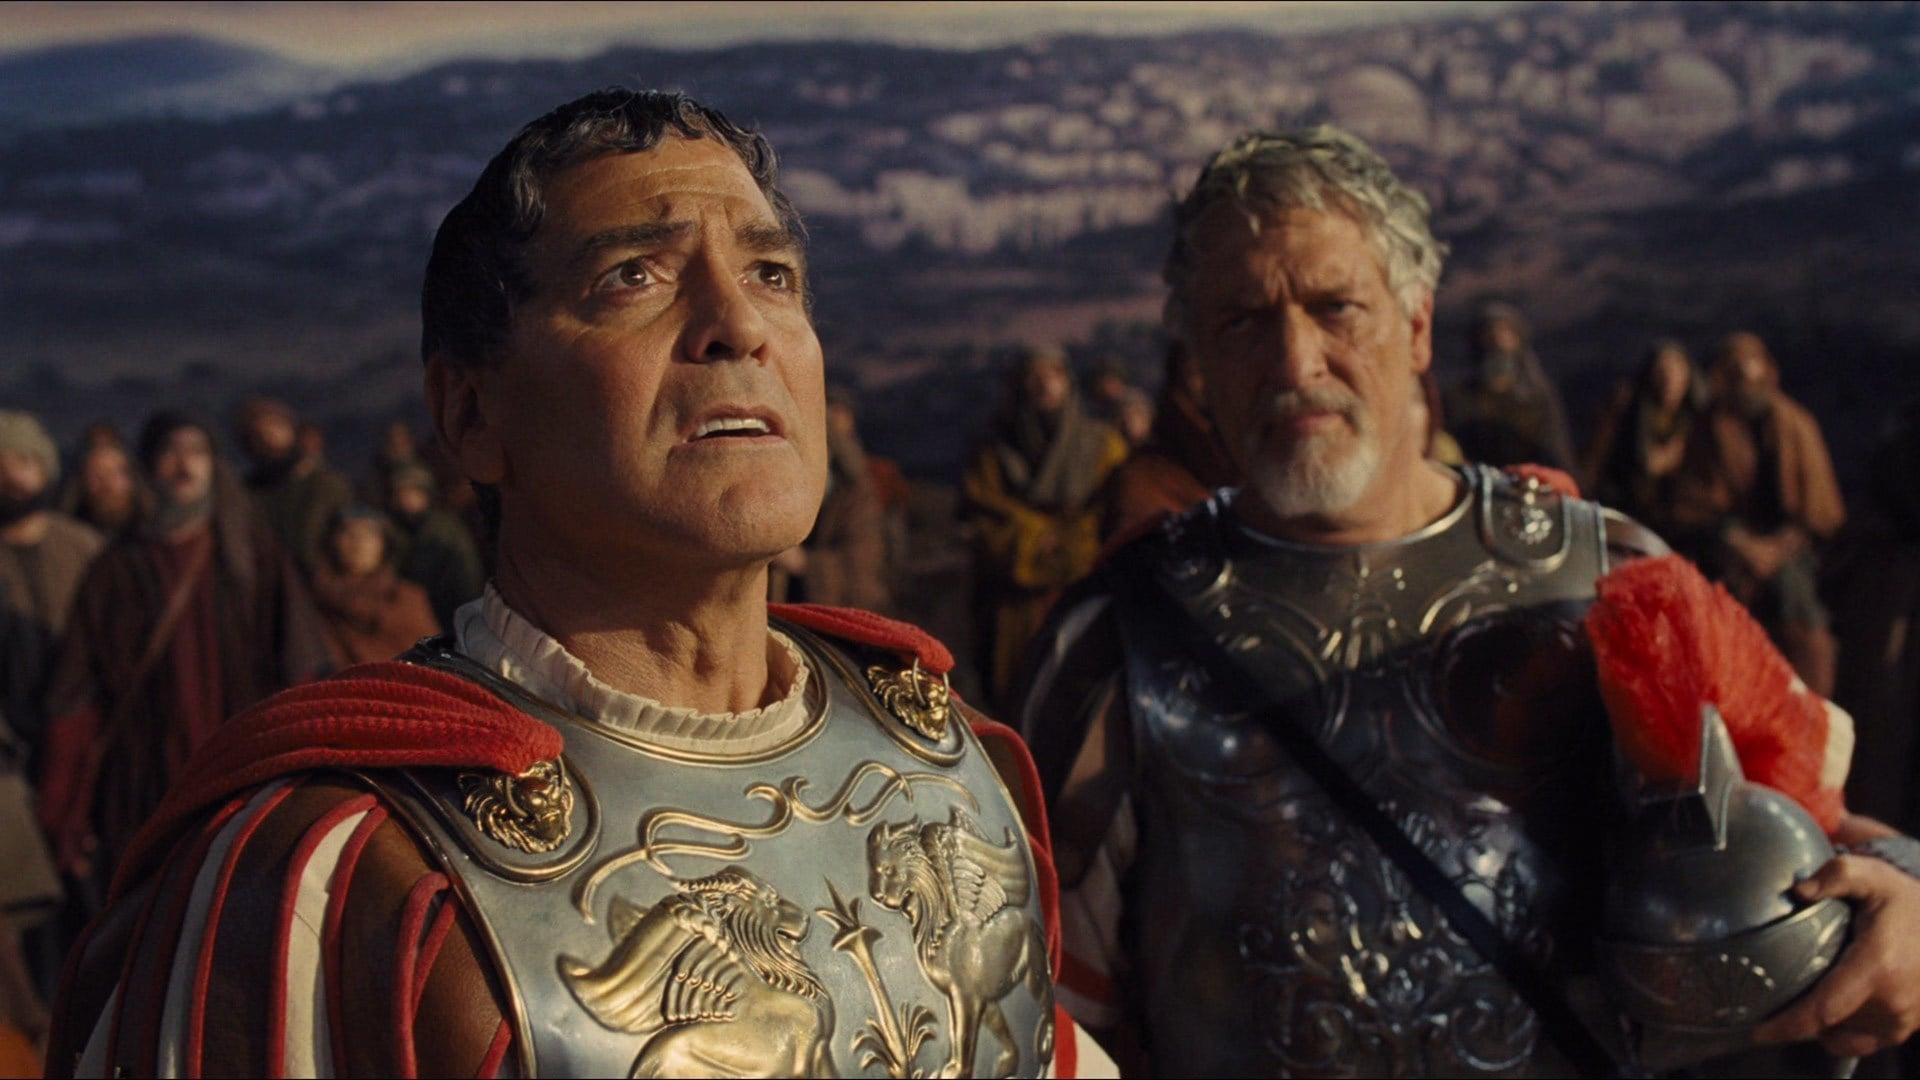 Hail, Caesar! backdrop